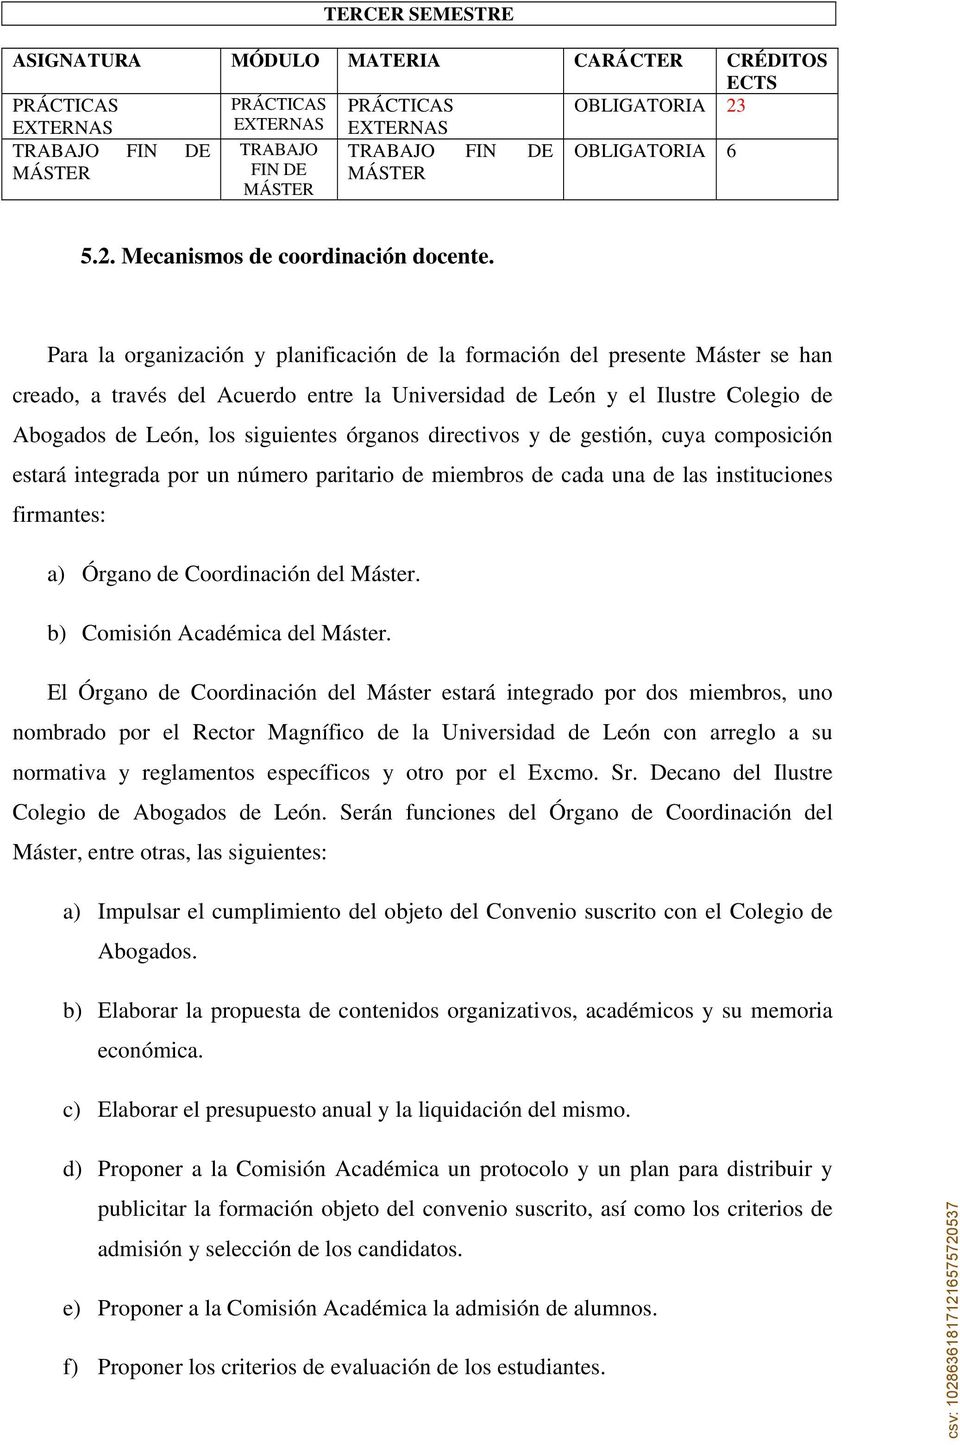 Para la organización y planificación de la formación del presente Máster se han creado, a través del Acuerdo entre la Universidad de León y el Ilustre Colegio de Abogados de León, los siguientes